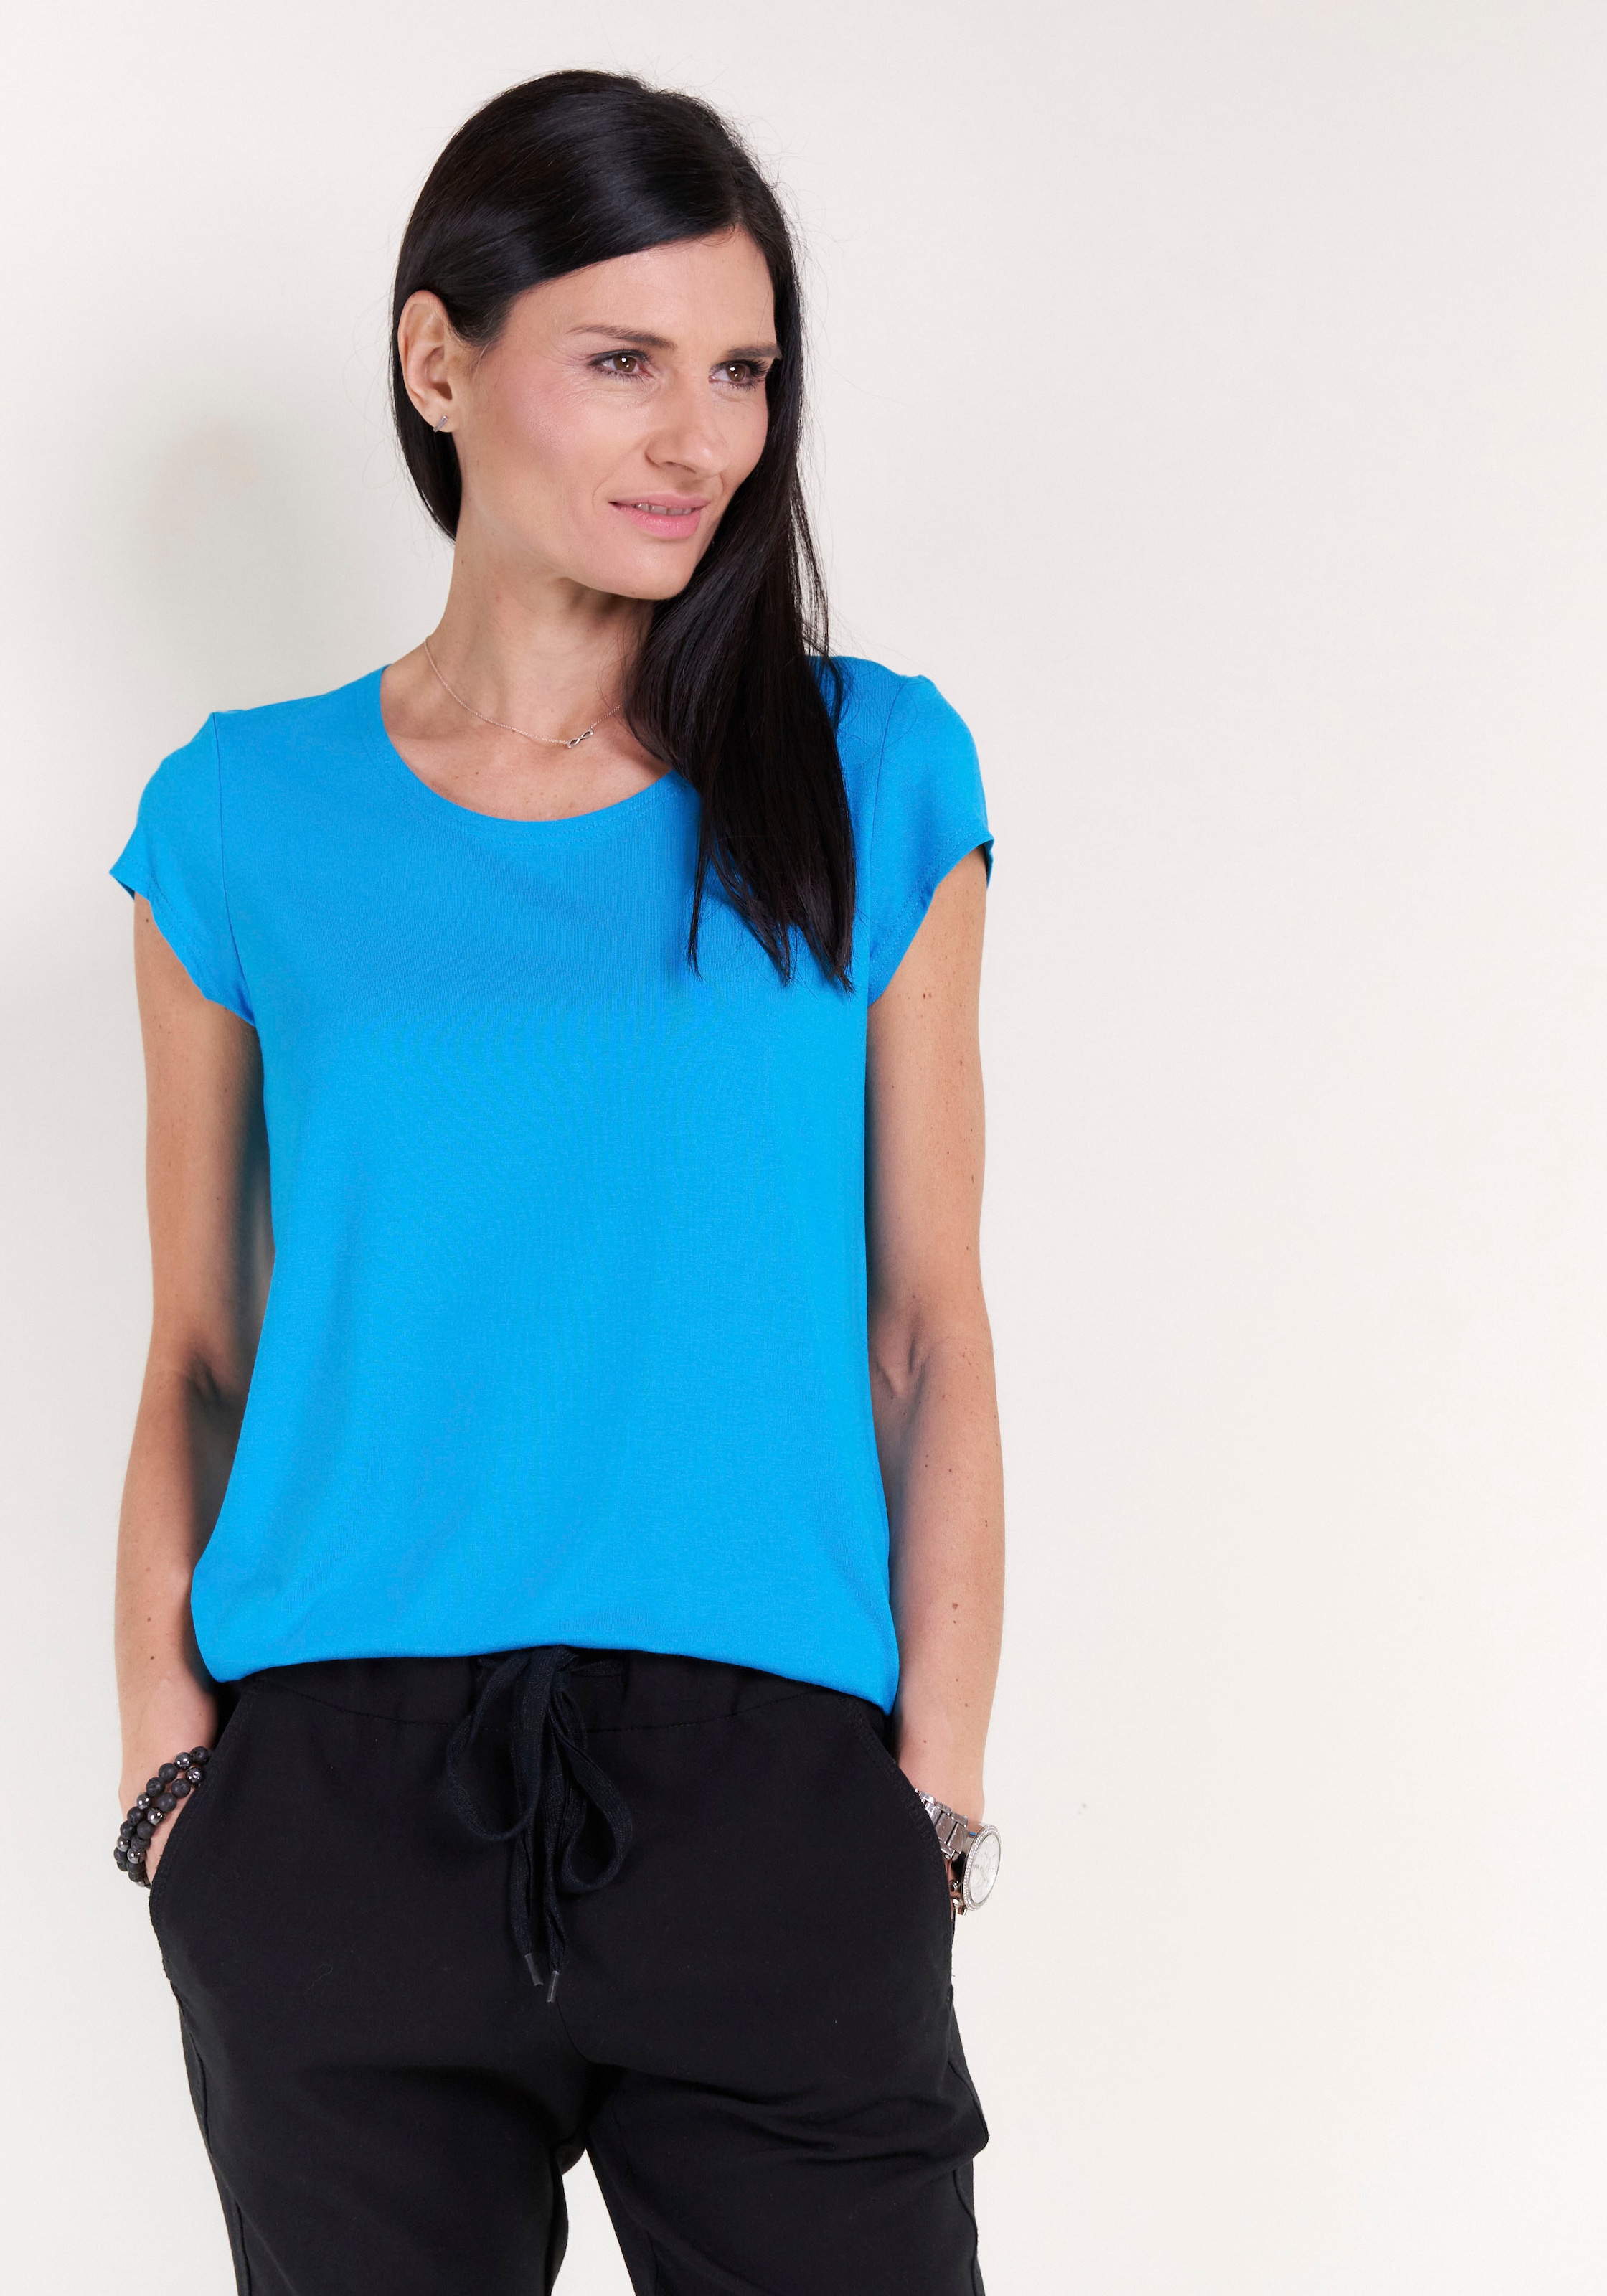 Seidel Rundhalsshirt, Kappenärmel, Made kaufen in online unifarben Moden mit Germany